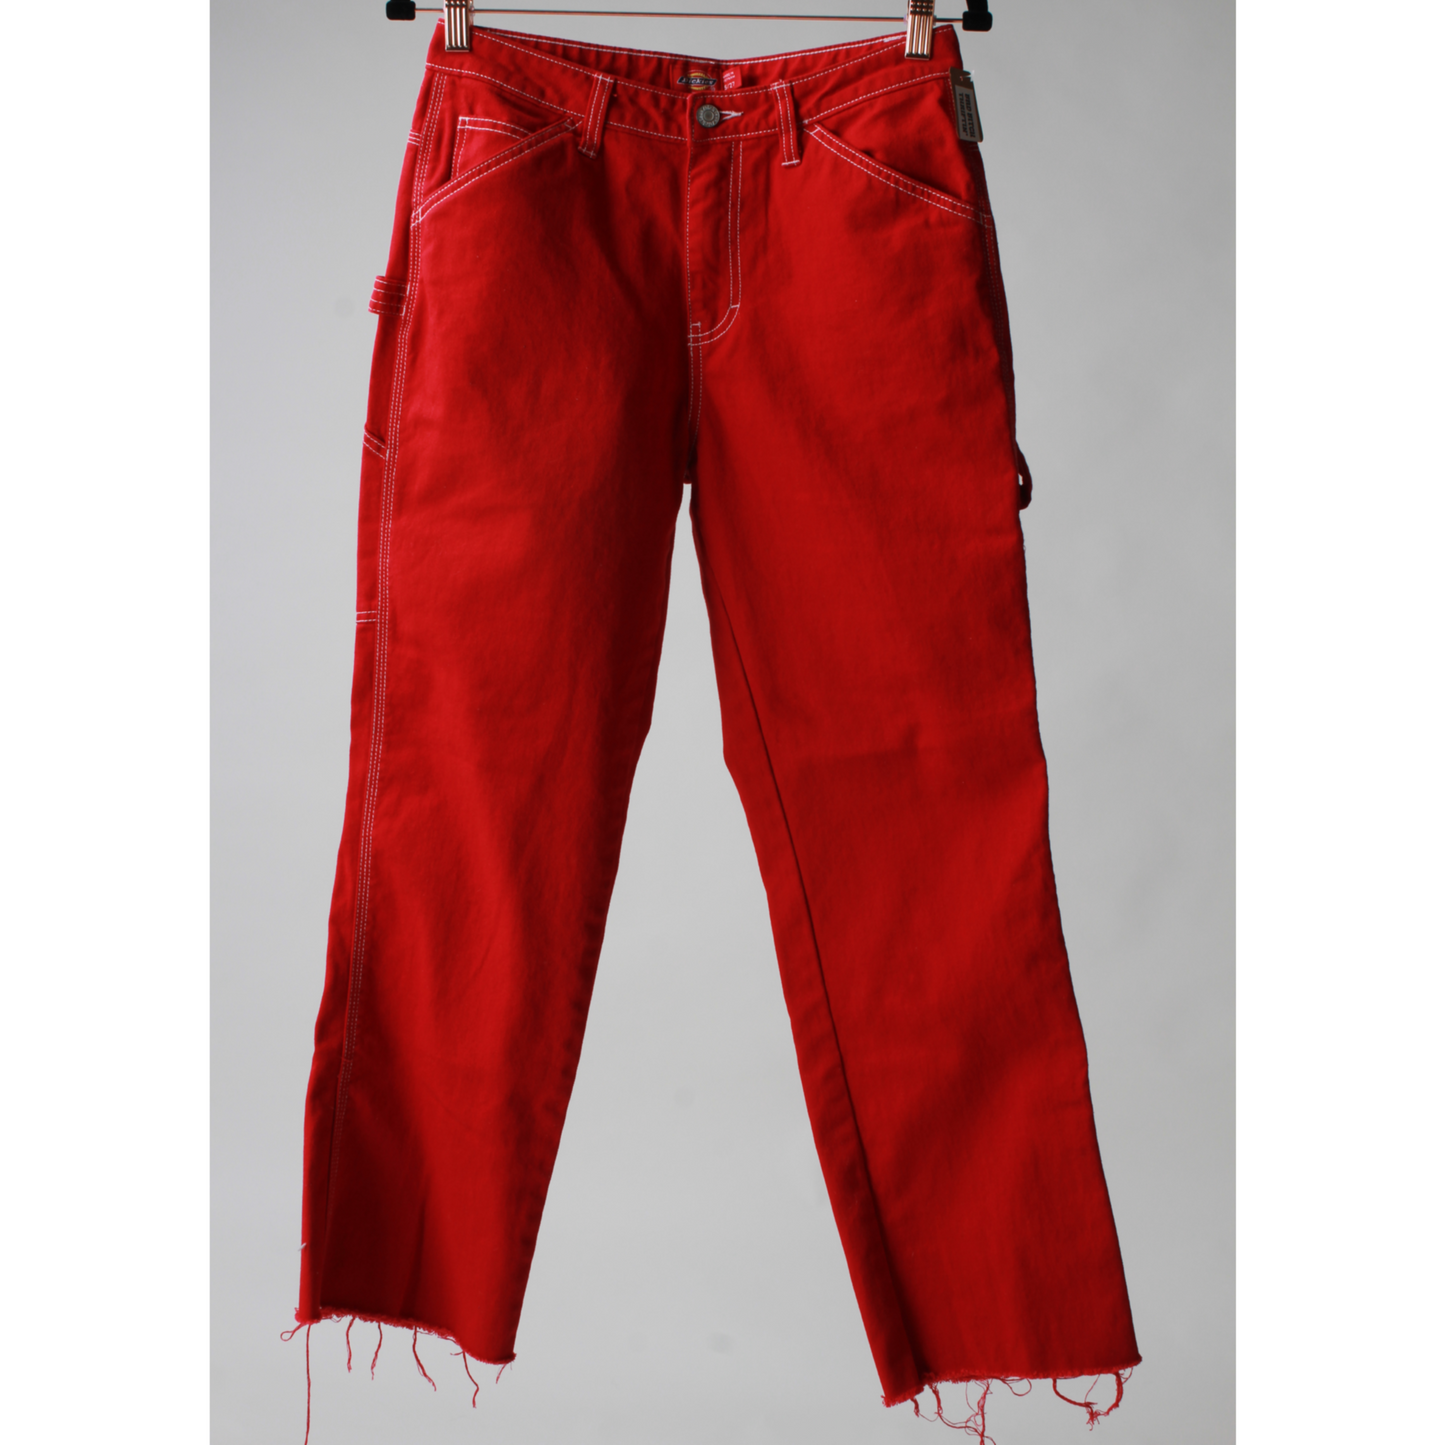 Red Dickies Carpenter Jeans (27)